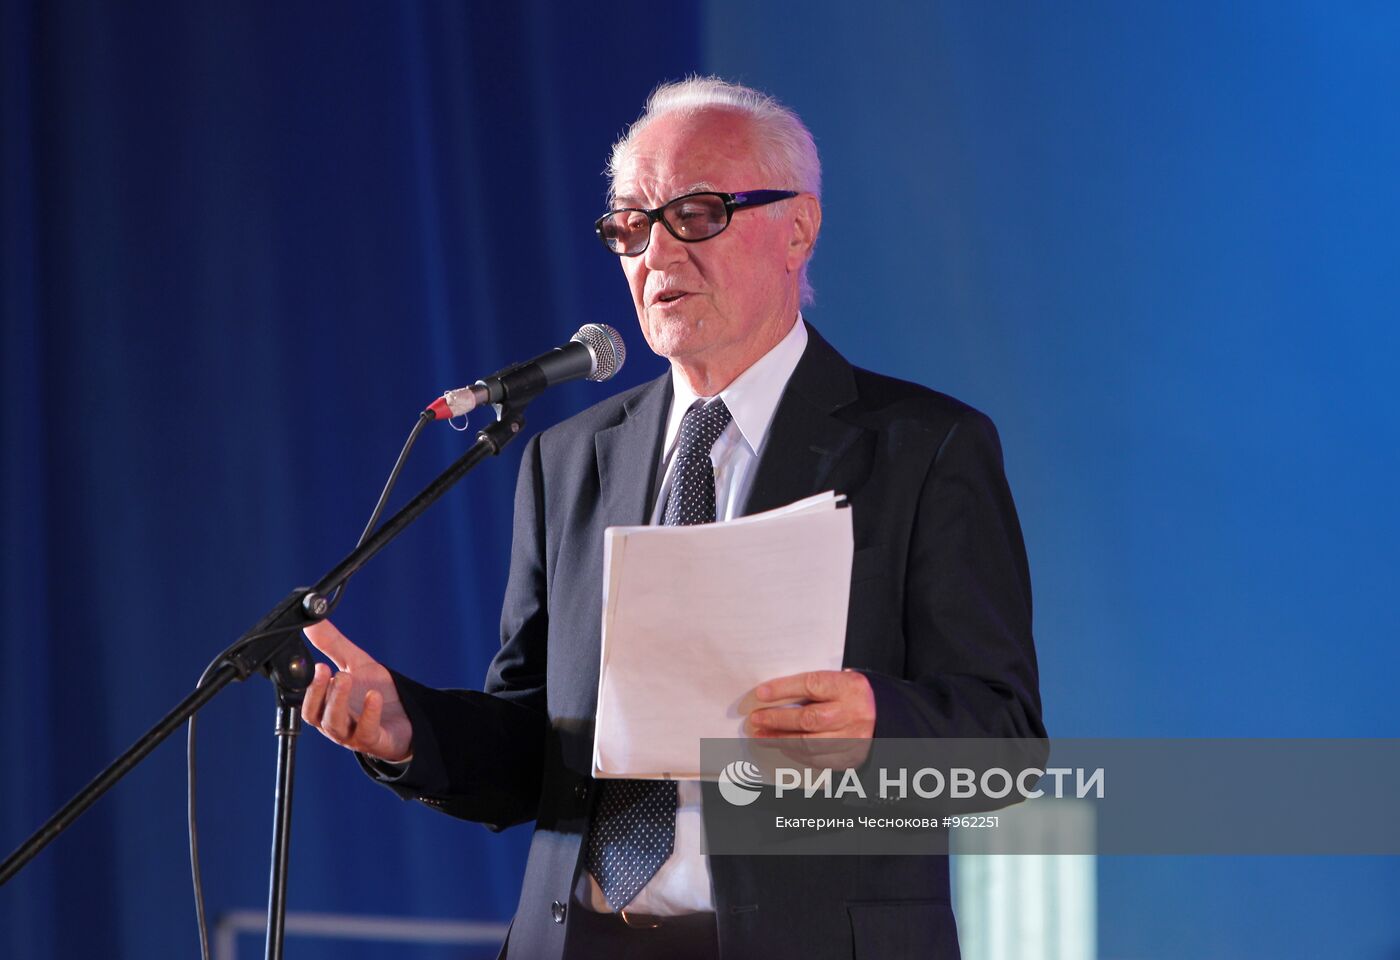 В Анапе состоялось закрытие кинофестиваля "Киношок-2011"